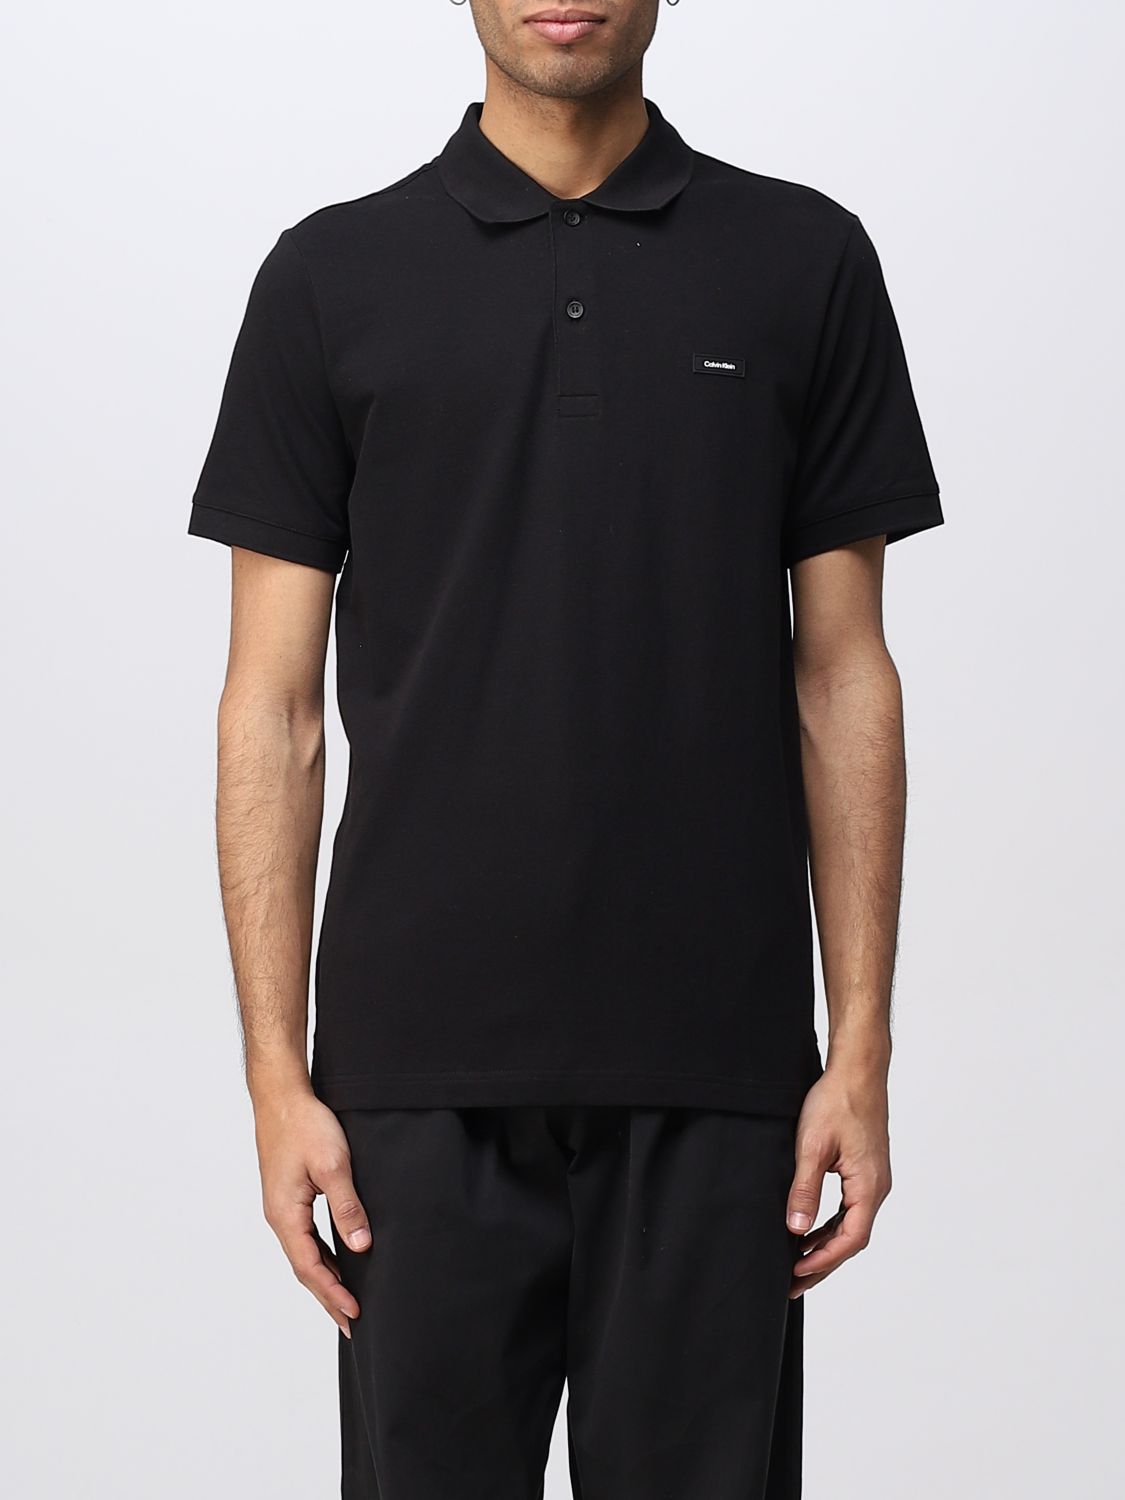 Calvin Klein Outlet: polo shirt for man - Black | Calvin Klein polo ...